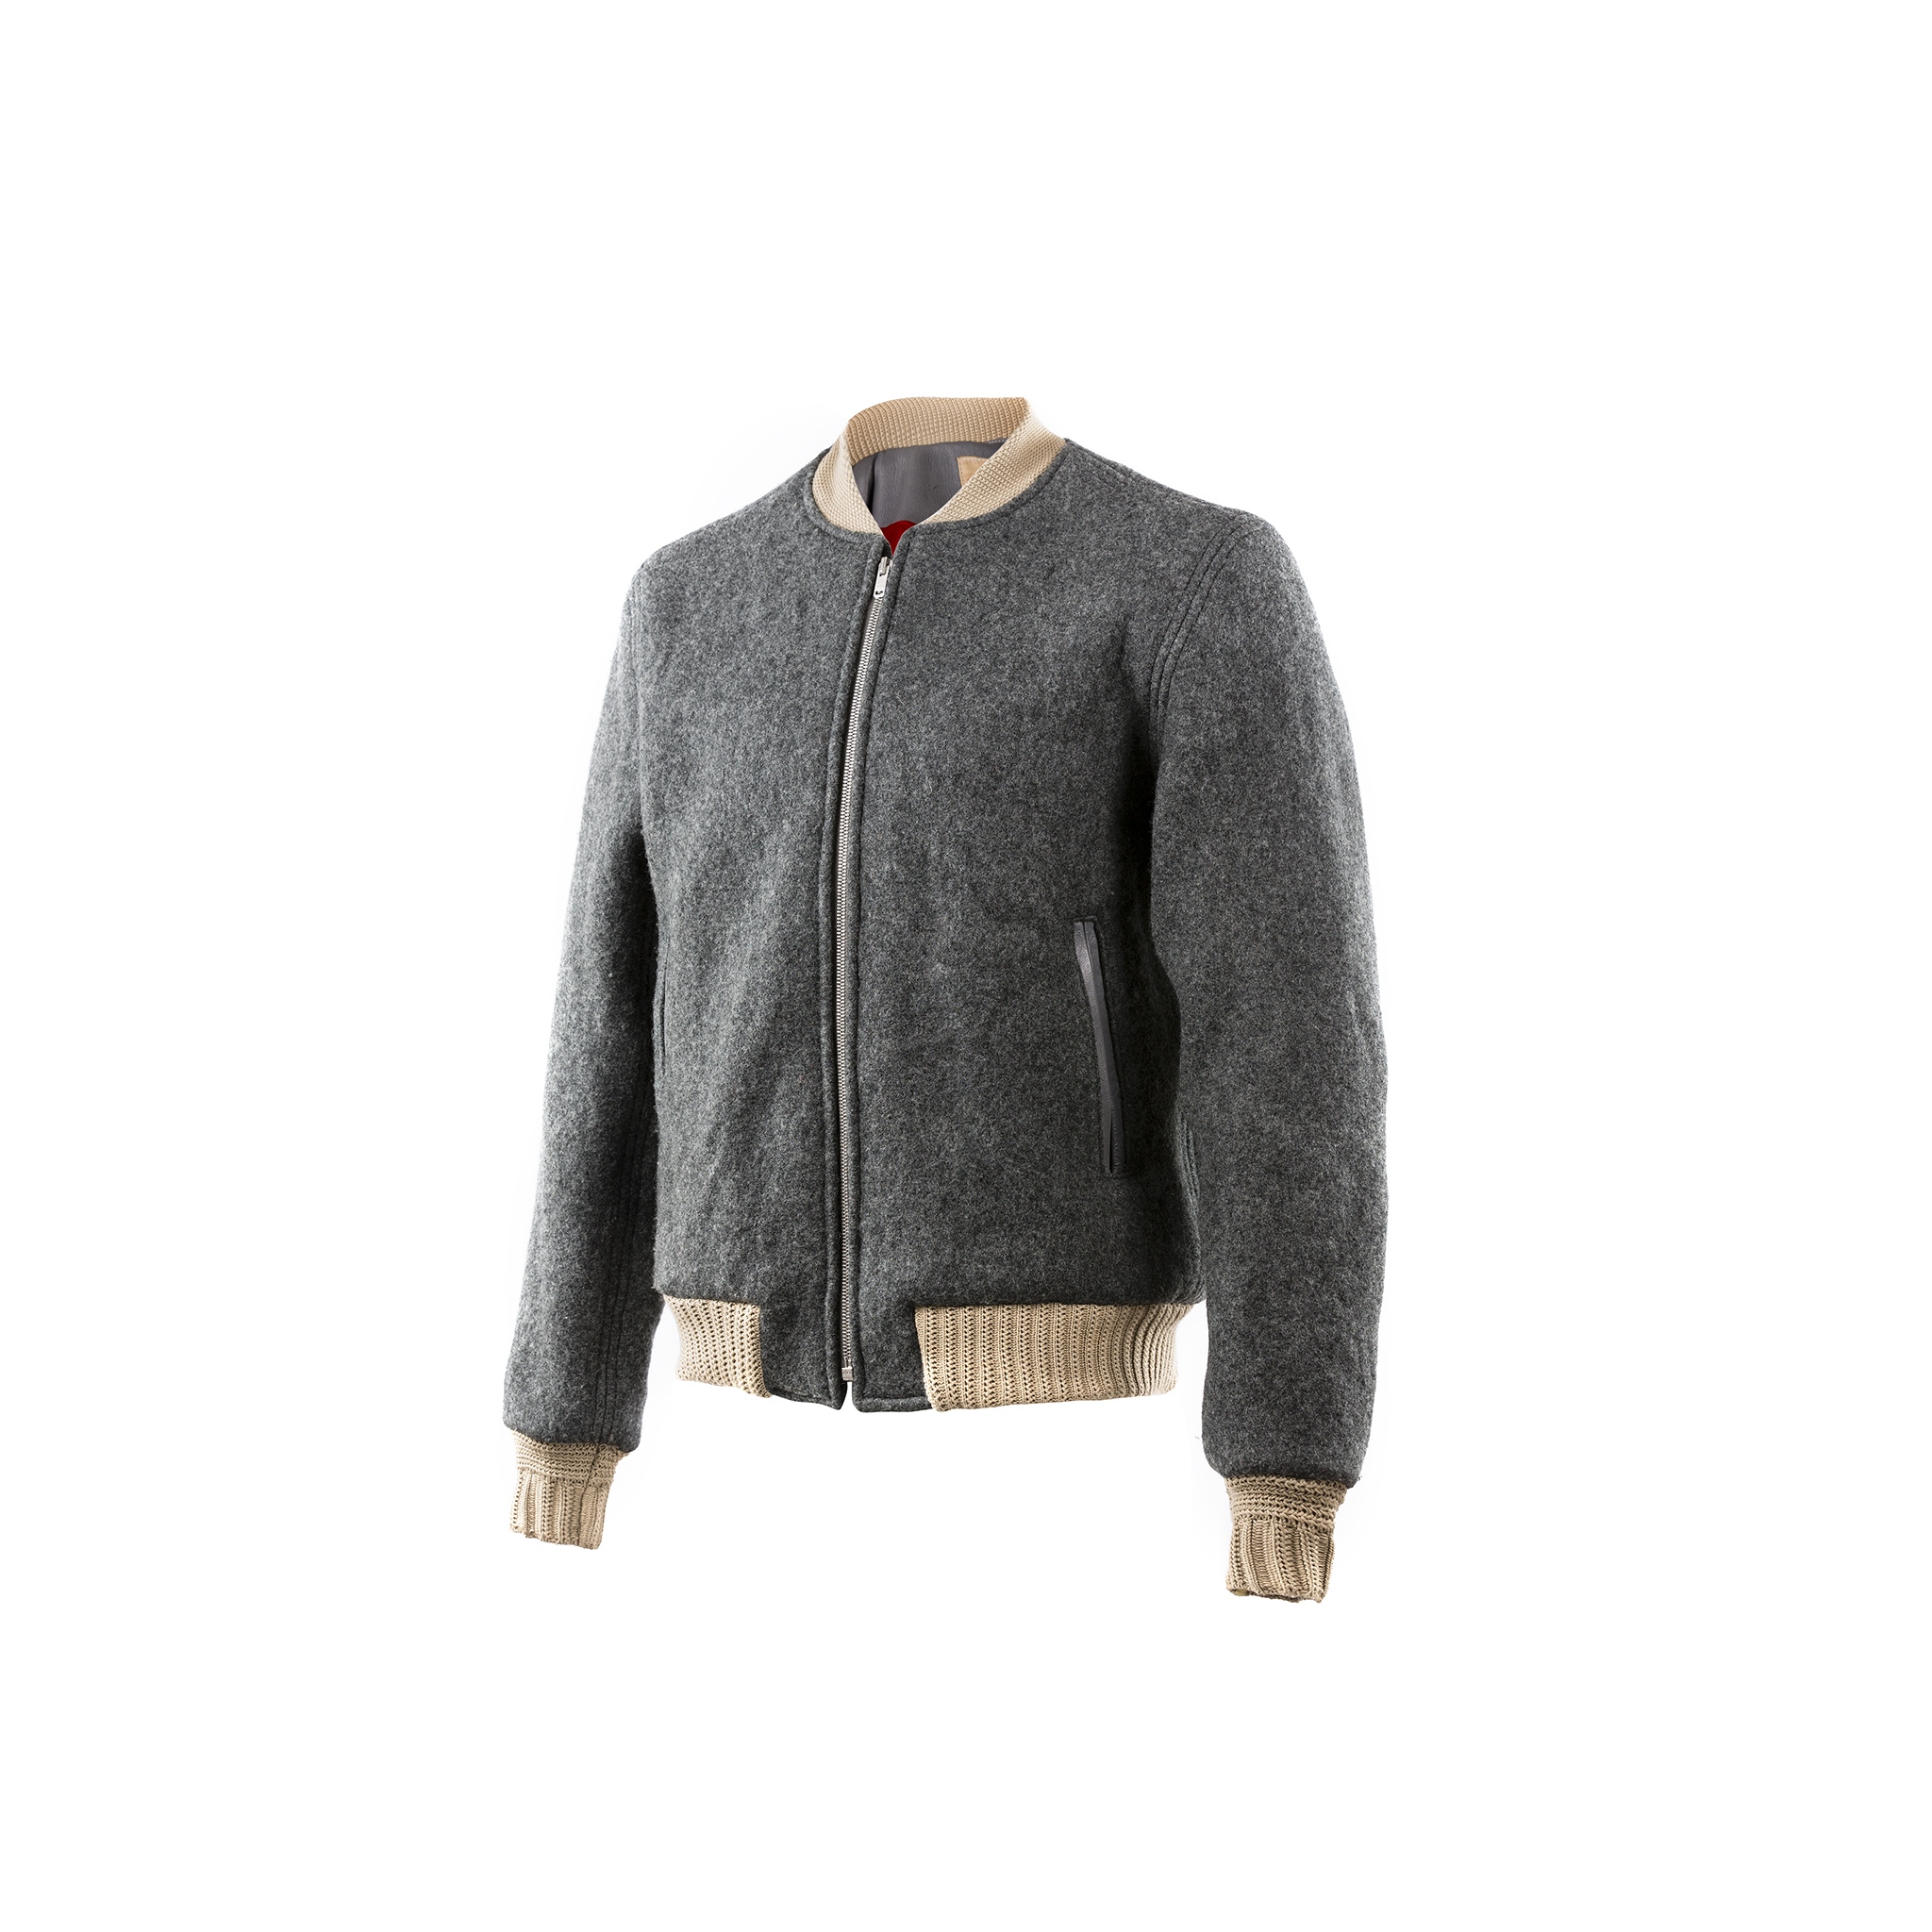 Queens Jacket - Merino wool - Grey color